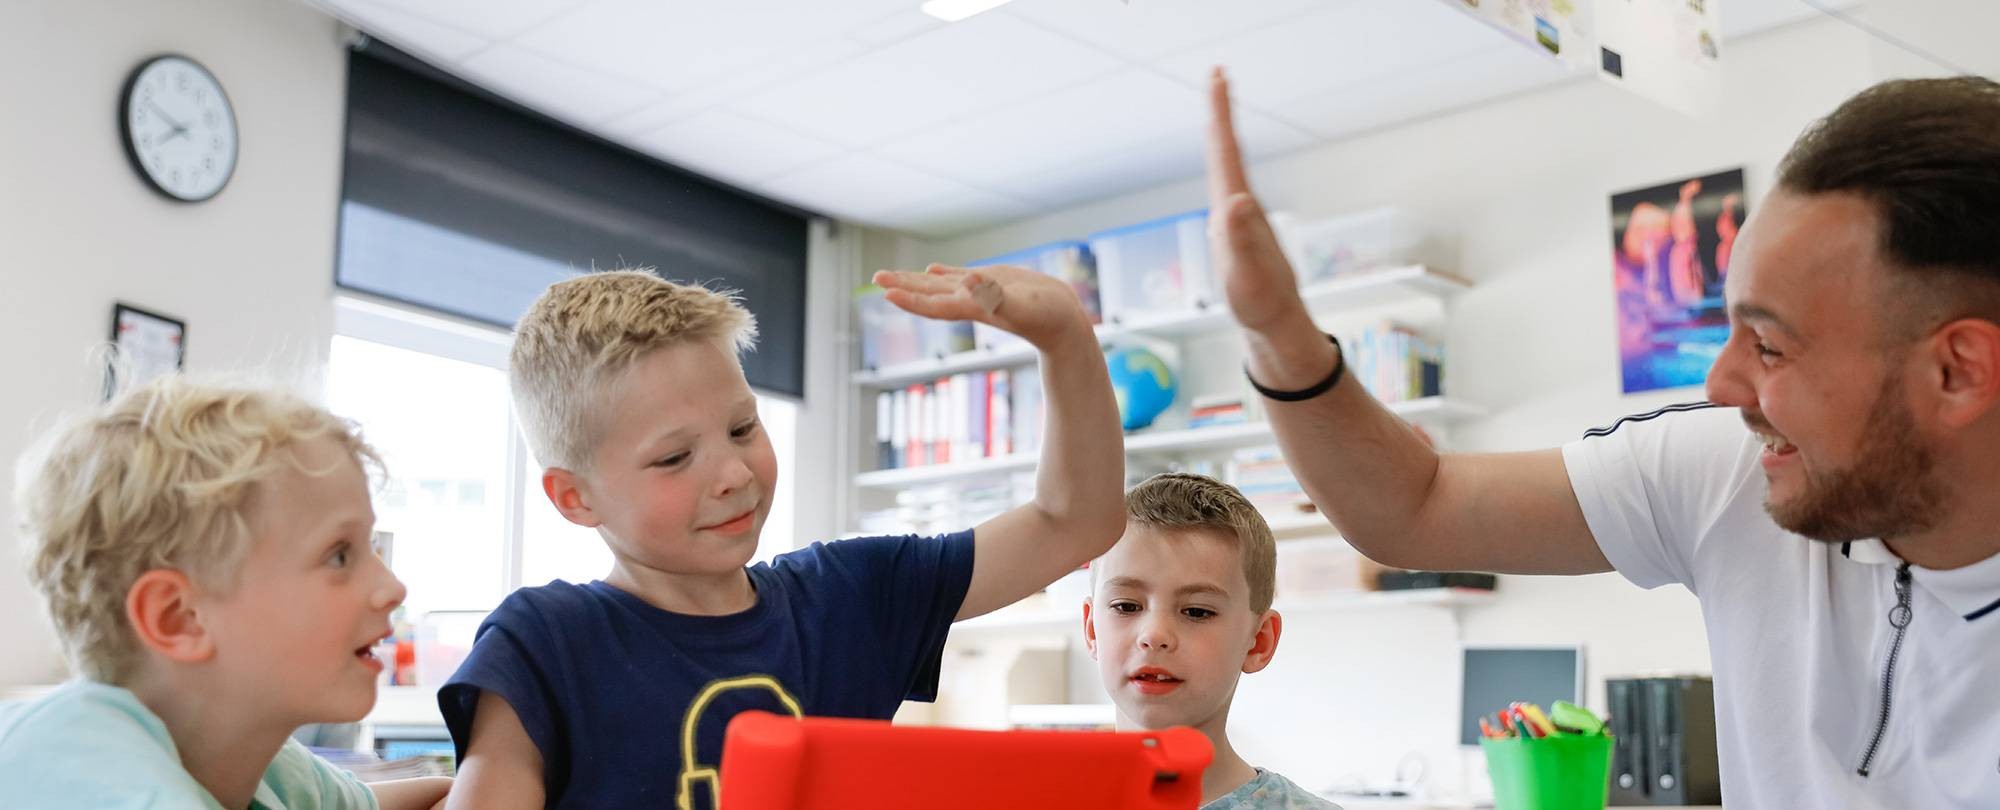 Leraar zit met drie kinderen achter de iPad en geeft n van die leerlingen een high-five.